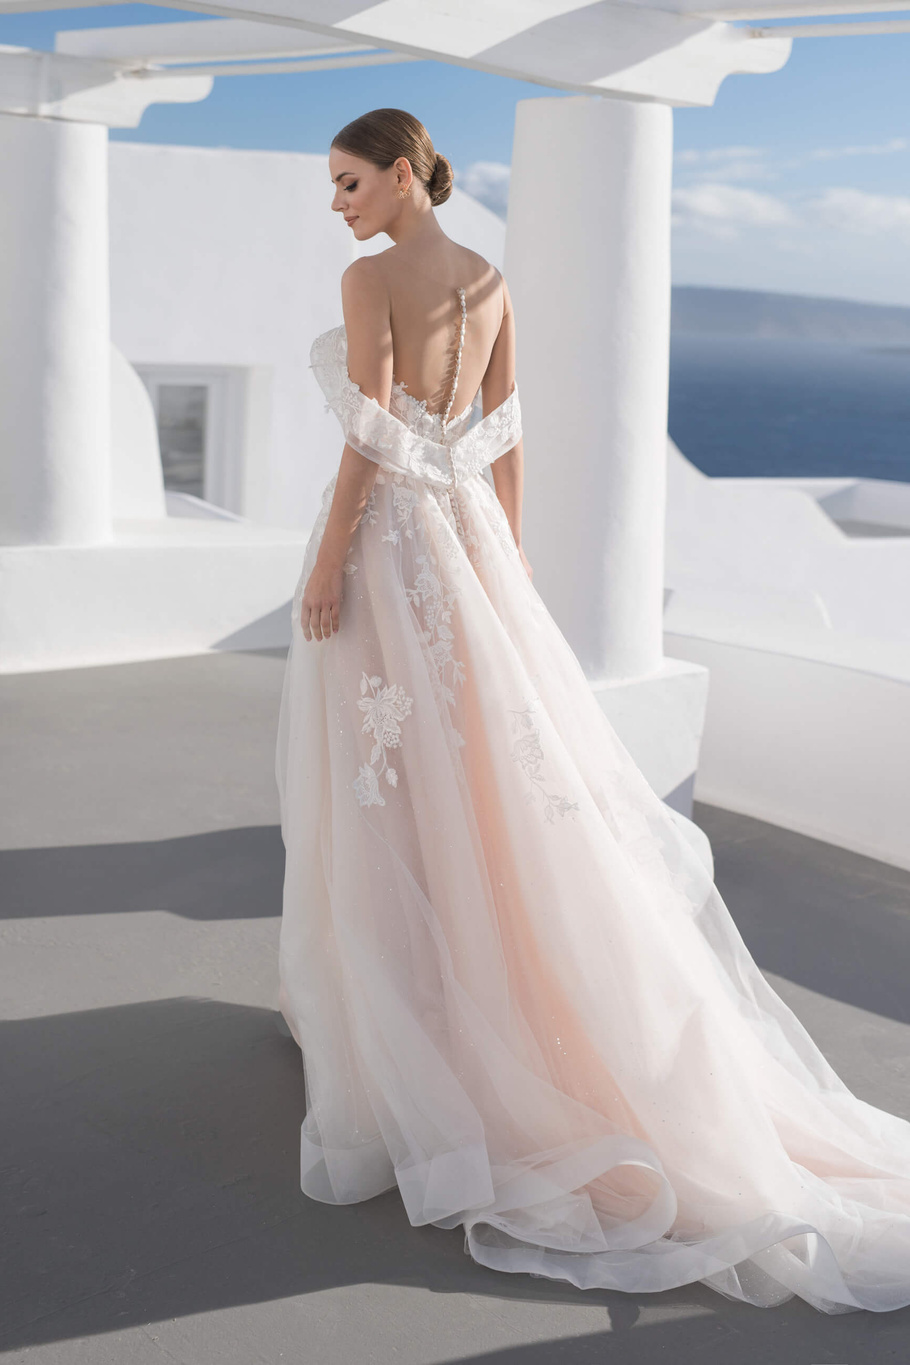 Свадебное платье «21008» Луссано Брайдал — купить в Краснодаре из коллекции 2021 Бланни